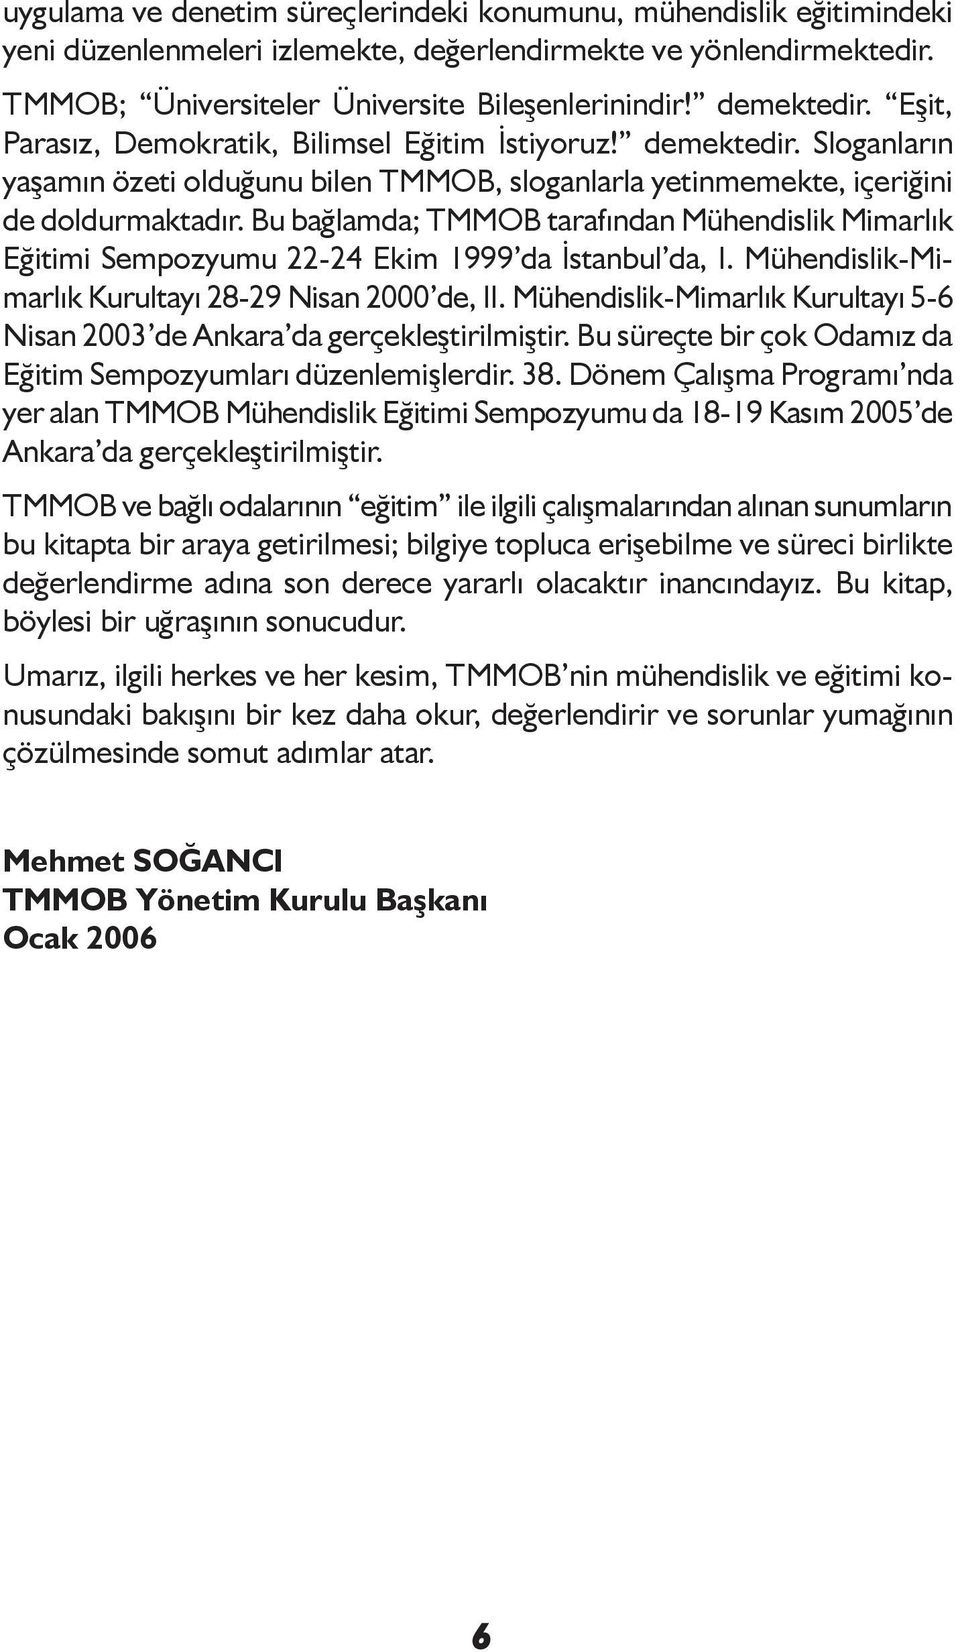 Bu bağlamda; TMMOB tarafından Mühendislik Mimarlık Eğitimi Sempozyumu 22-24 Ekim 1999 da İstanbul da, I. Mühendislik-Mimarlık Kurultayı 28-29 Nisan 2000 de, II.